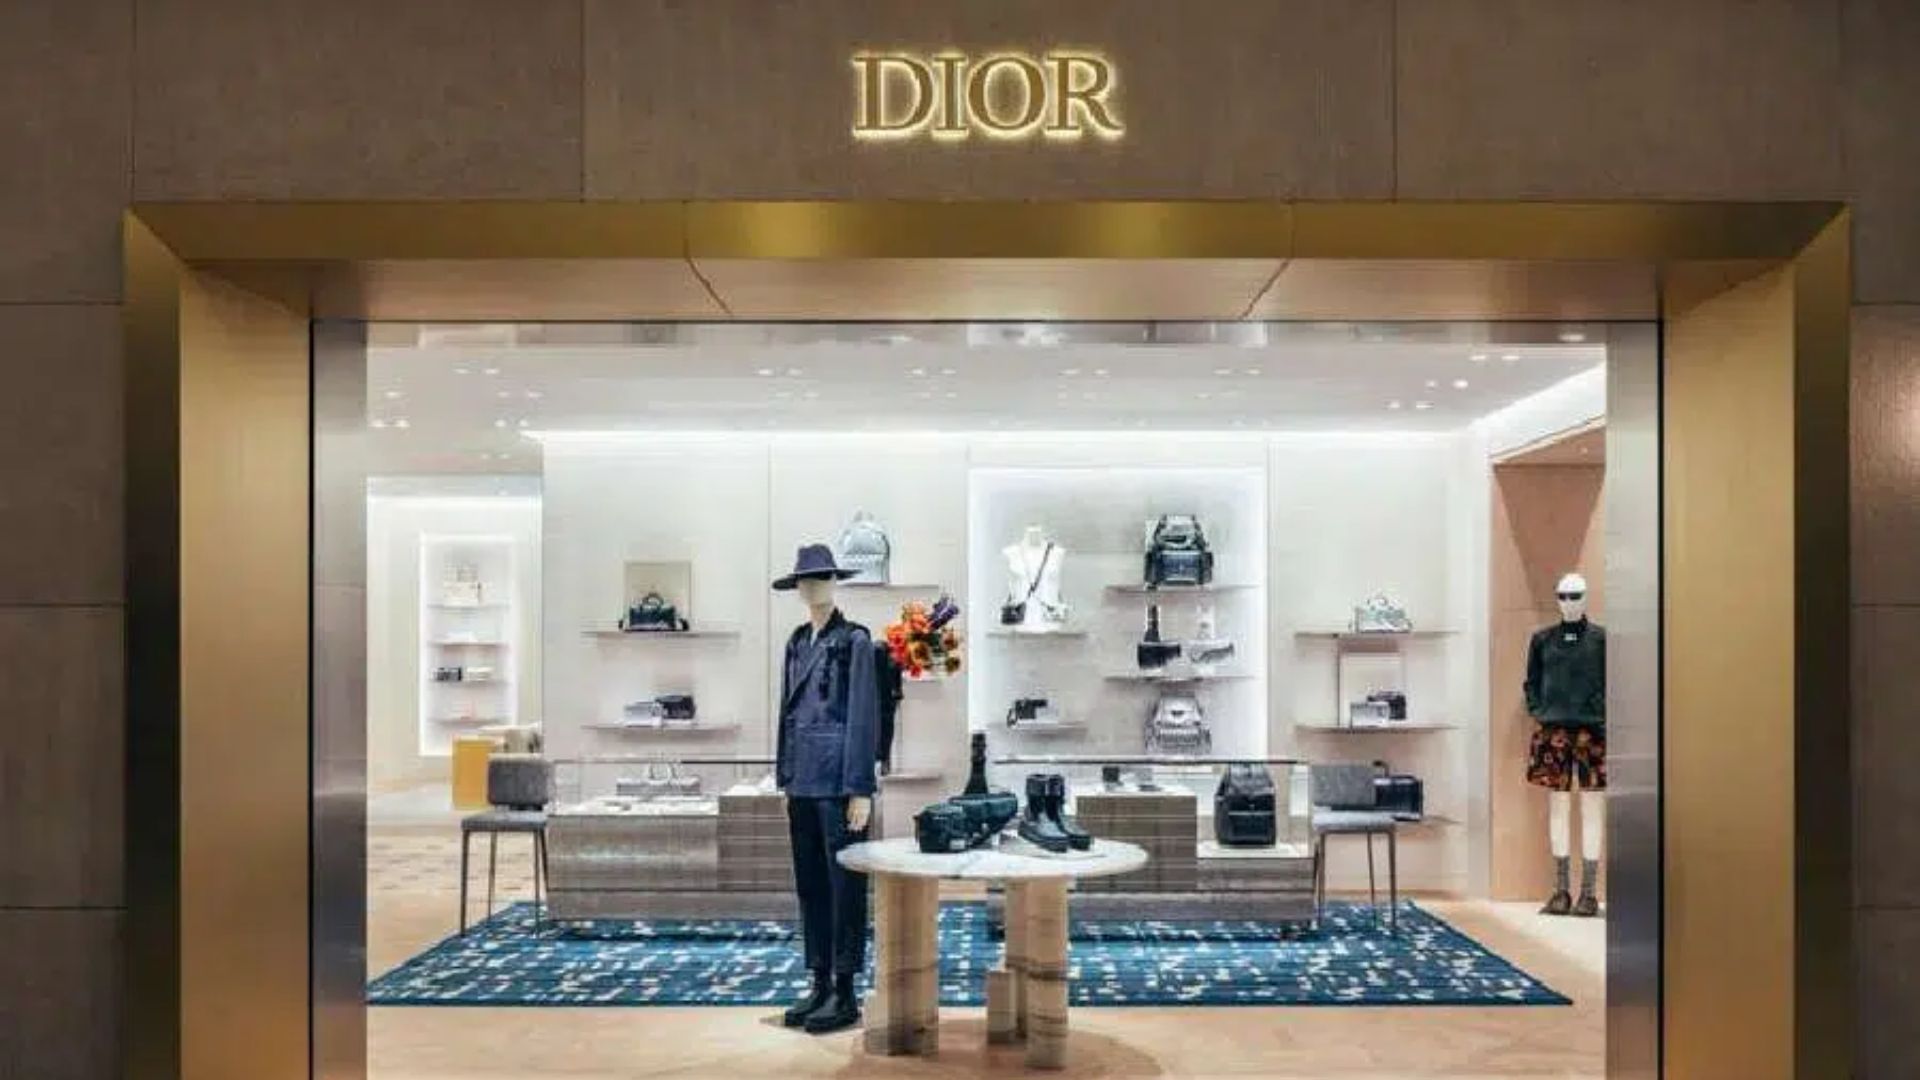 Dior: Expansión estratégica en México con nuevas boutiques y plataforma online